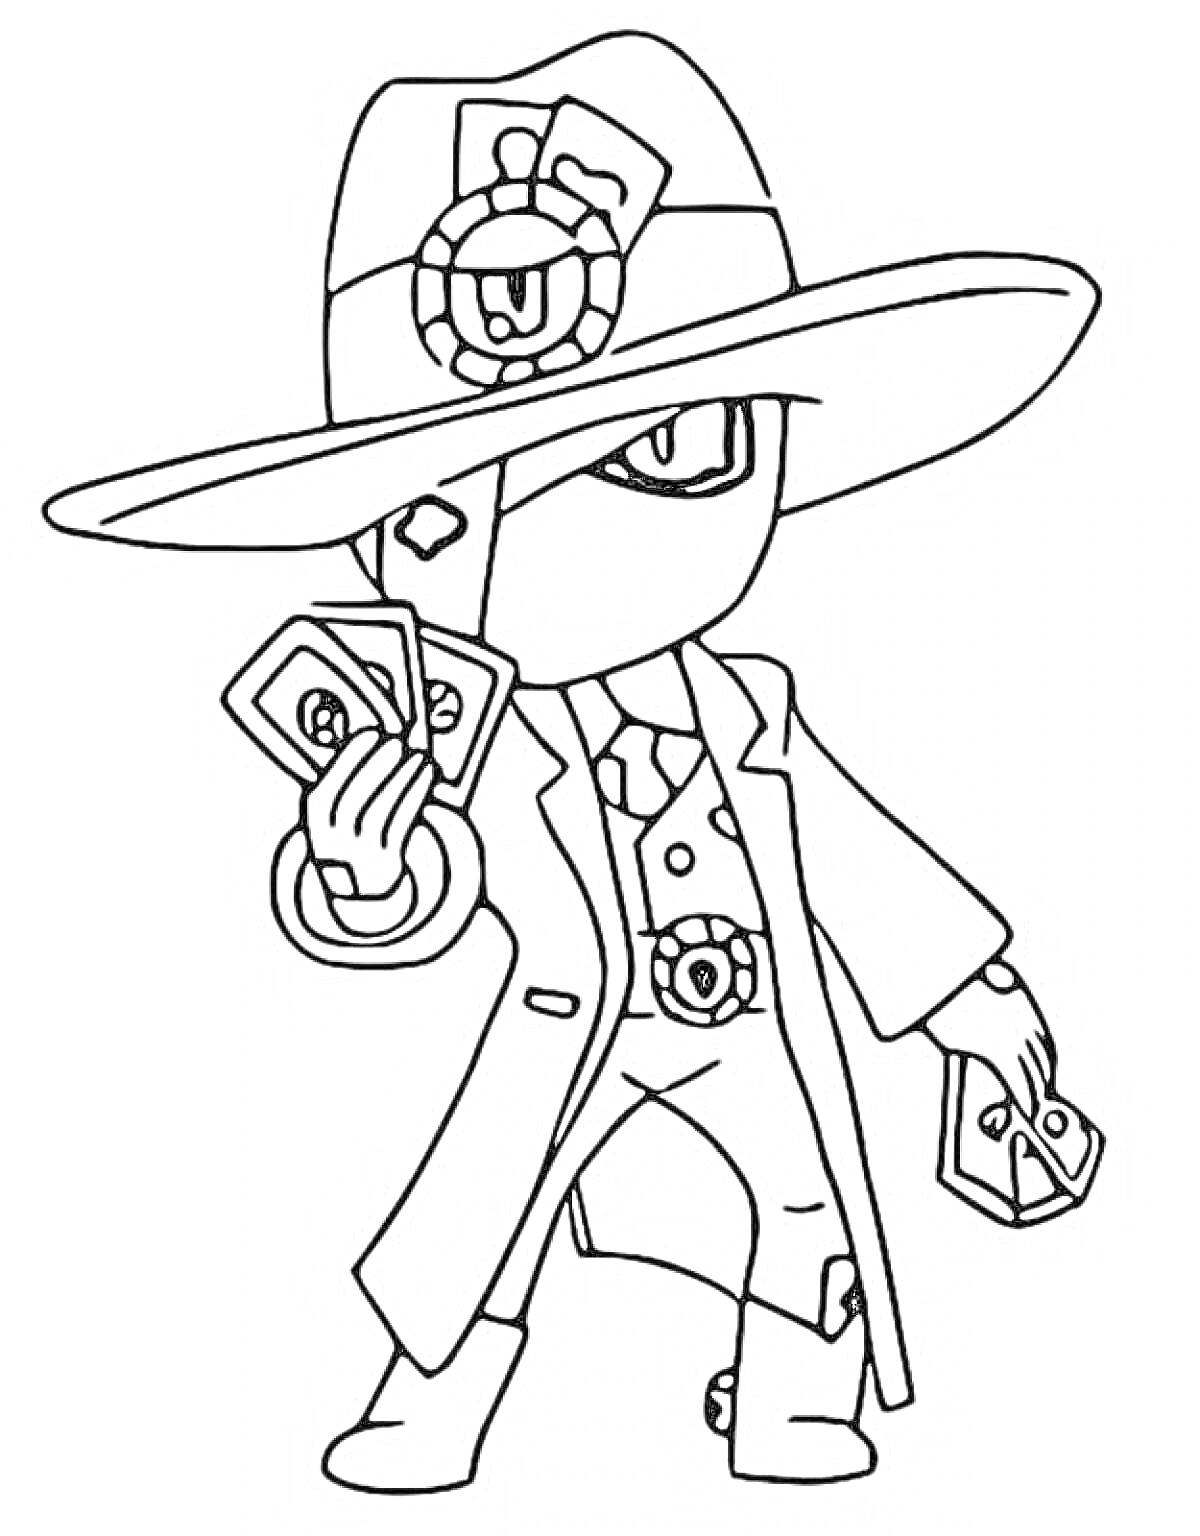 Персонаж из игры Brawl Stars - Эдгар в шляпе, с картами в руках